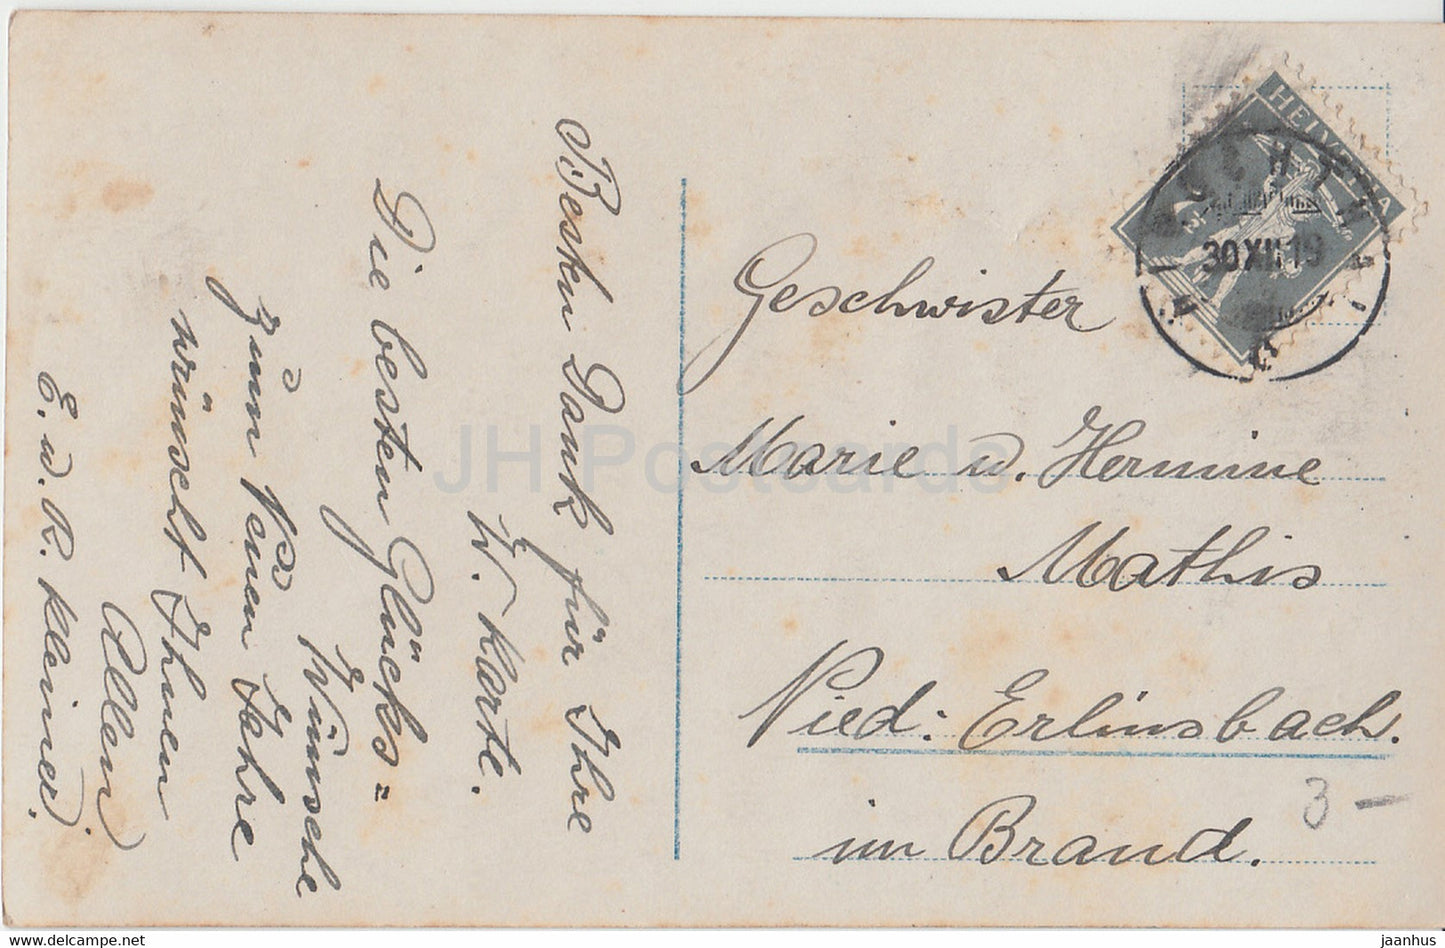 New Year Greeting Card - Ich gratuliere innigst zum neuen Jahre! - boy - 980/2 - old postcard - 1919 - Germany - used